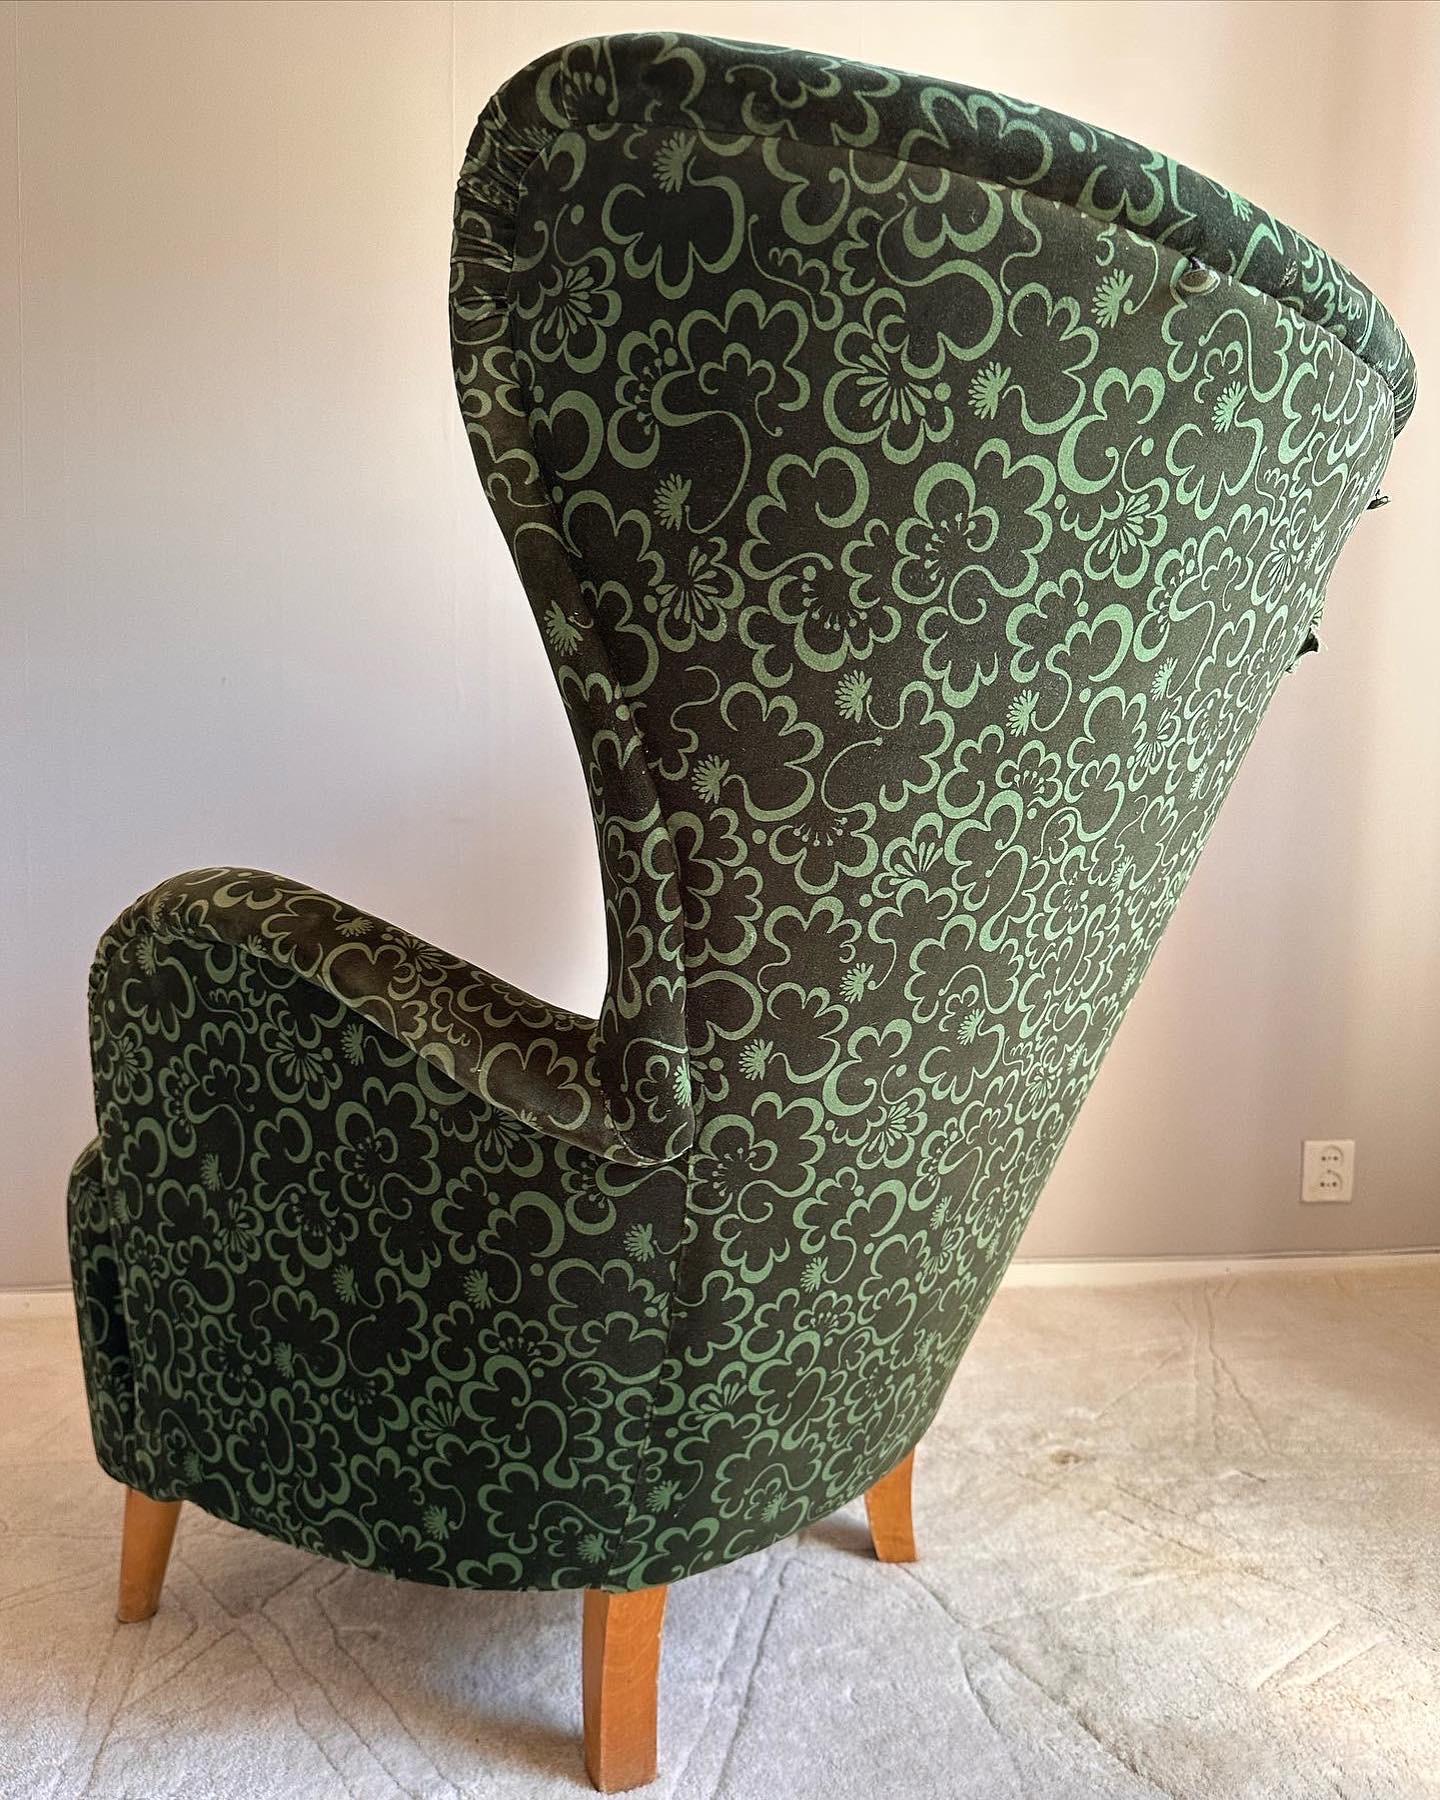 Dieser seltene Wingback Chair wurde in den 1940er Jahren von Otto Schulz für Boet entworfen. Das erstaunliche organische Design und die Kurven sorgen für ein schönes Aussehen.

Dieses Stück wird mit größter Sorgfalt verpackt, damit Sie als Käufer es